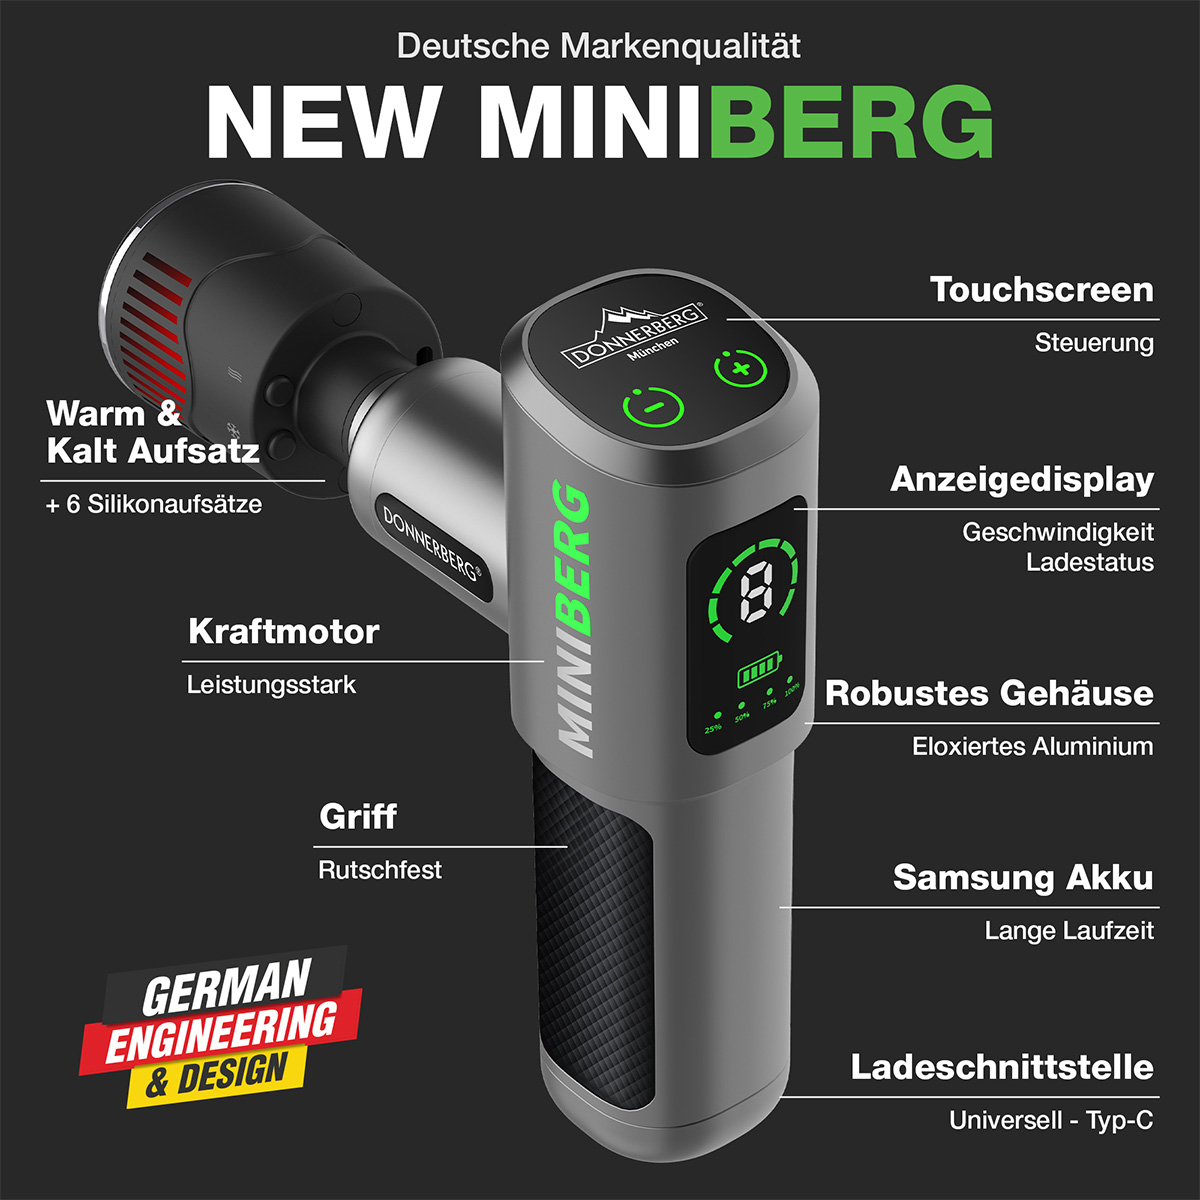 MARKTNEUHEIT Massagepistole Aufsatz Samsung Mini DONNERBERG , Akku Wärme/Kälte Massagepistole Gun mit Miniberg